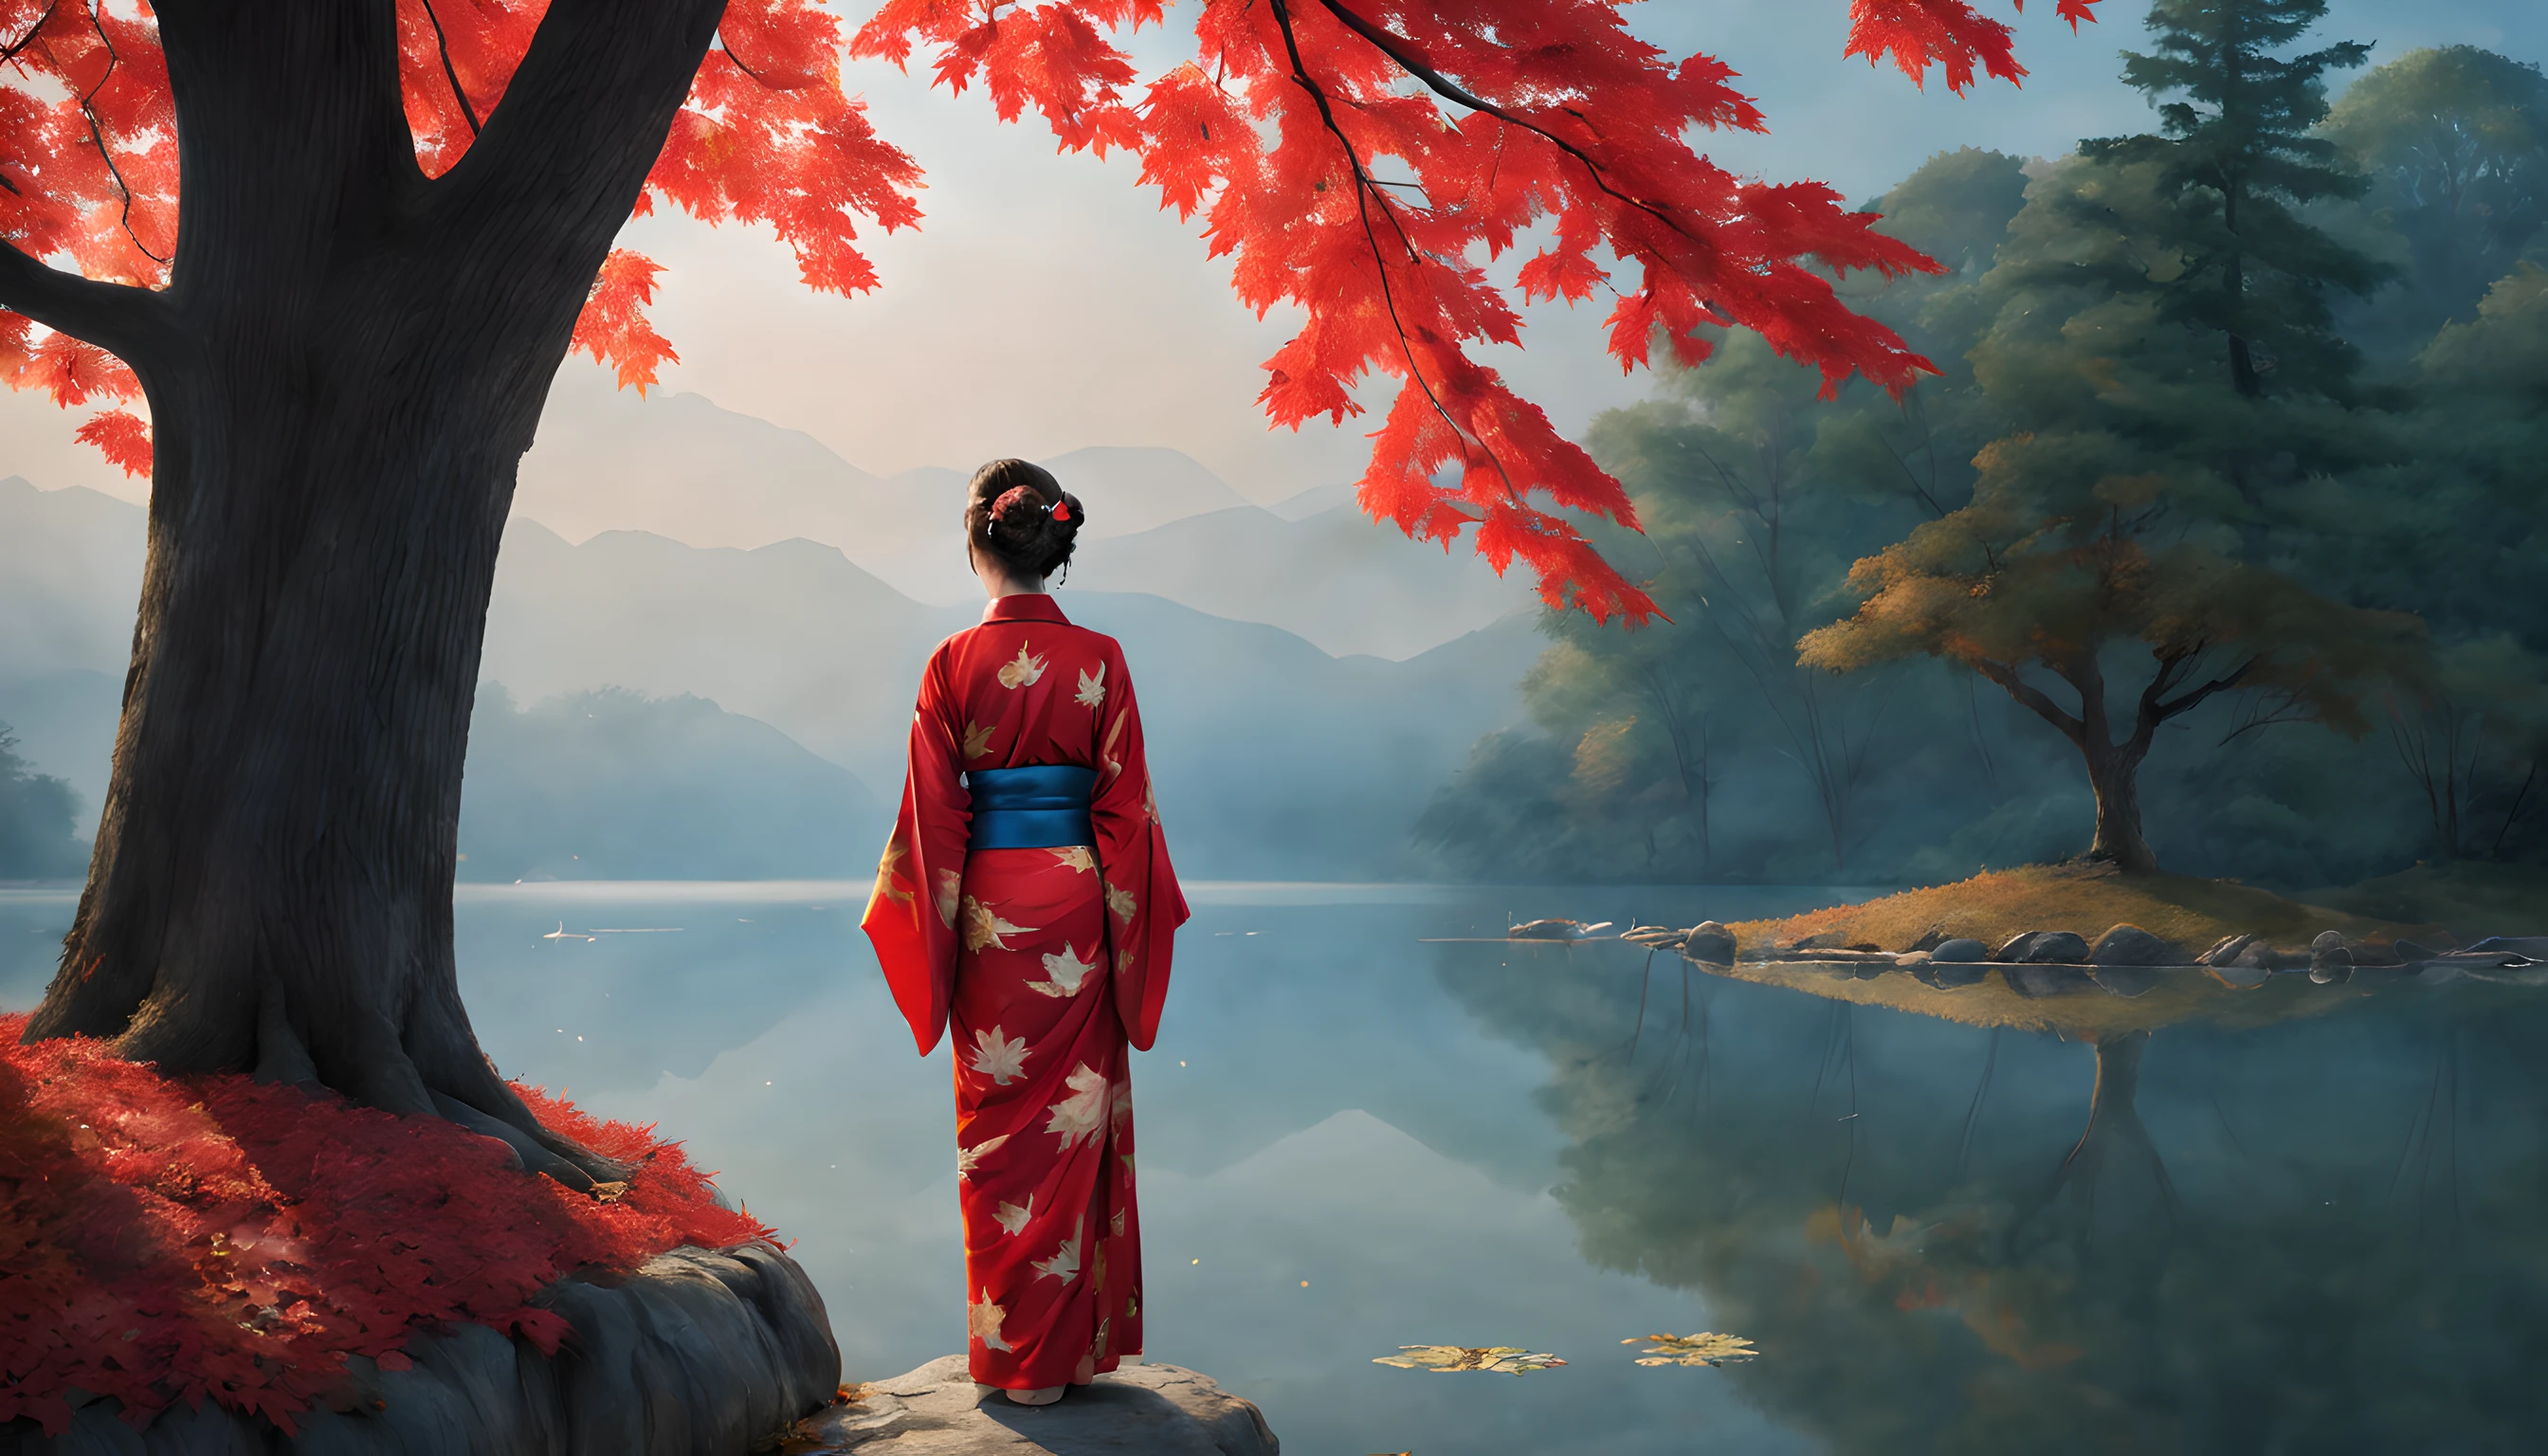 "Componga una cautivadora escena nocturna con un tranquilo estanque envuelto por los intensos tonos del follaje otoñal de las hojas de arce.. La composición debe enfatizar la prominencia de las hojas de arce y el majestuoso arce que se encuentra cerca..

en primer plano, una mujer japonesa de unos 40 años se alza con gracia, envuelto en un kimono rojo vibrante. El kimono acentúa su elegancia., y su belleza irradia bajo la luz de la luna. Ella es una visión de encanto eterno., capturando la esencia de la temporada.

La mujer contempla el estanque resplandeciente., donde el reflejo de las hojas de arce baila sobre la superficie del agua. Su expresión es de serena contemplación., mientras se sumerge en la tranquila belleza de la noche.

El fondo muestra el magnífico arce., sus ramas adornadas con hojas resplandecientes que parecen captar la luz de la luna. El estanque refleja la escena etérea., añadiendo al encanto del momento.

La composición general debe crear una sensación de serenidad y reverencia por la belleza de la naturaleza.. Asegúrese de que la cautivadora belleza de la mujer y el brillo de las hojas de arce ocupen un lugar central en este fascinante cuadro otoñal.."